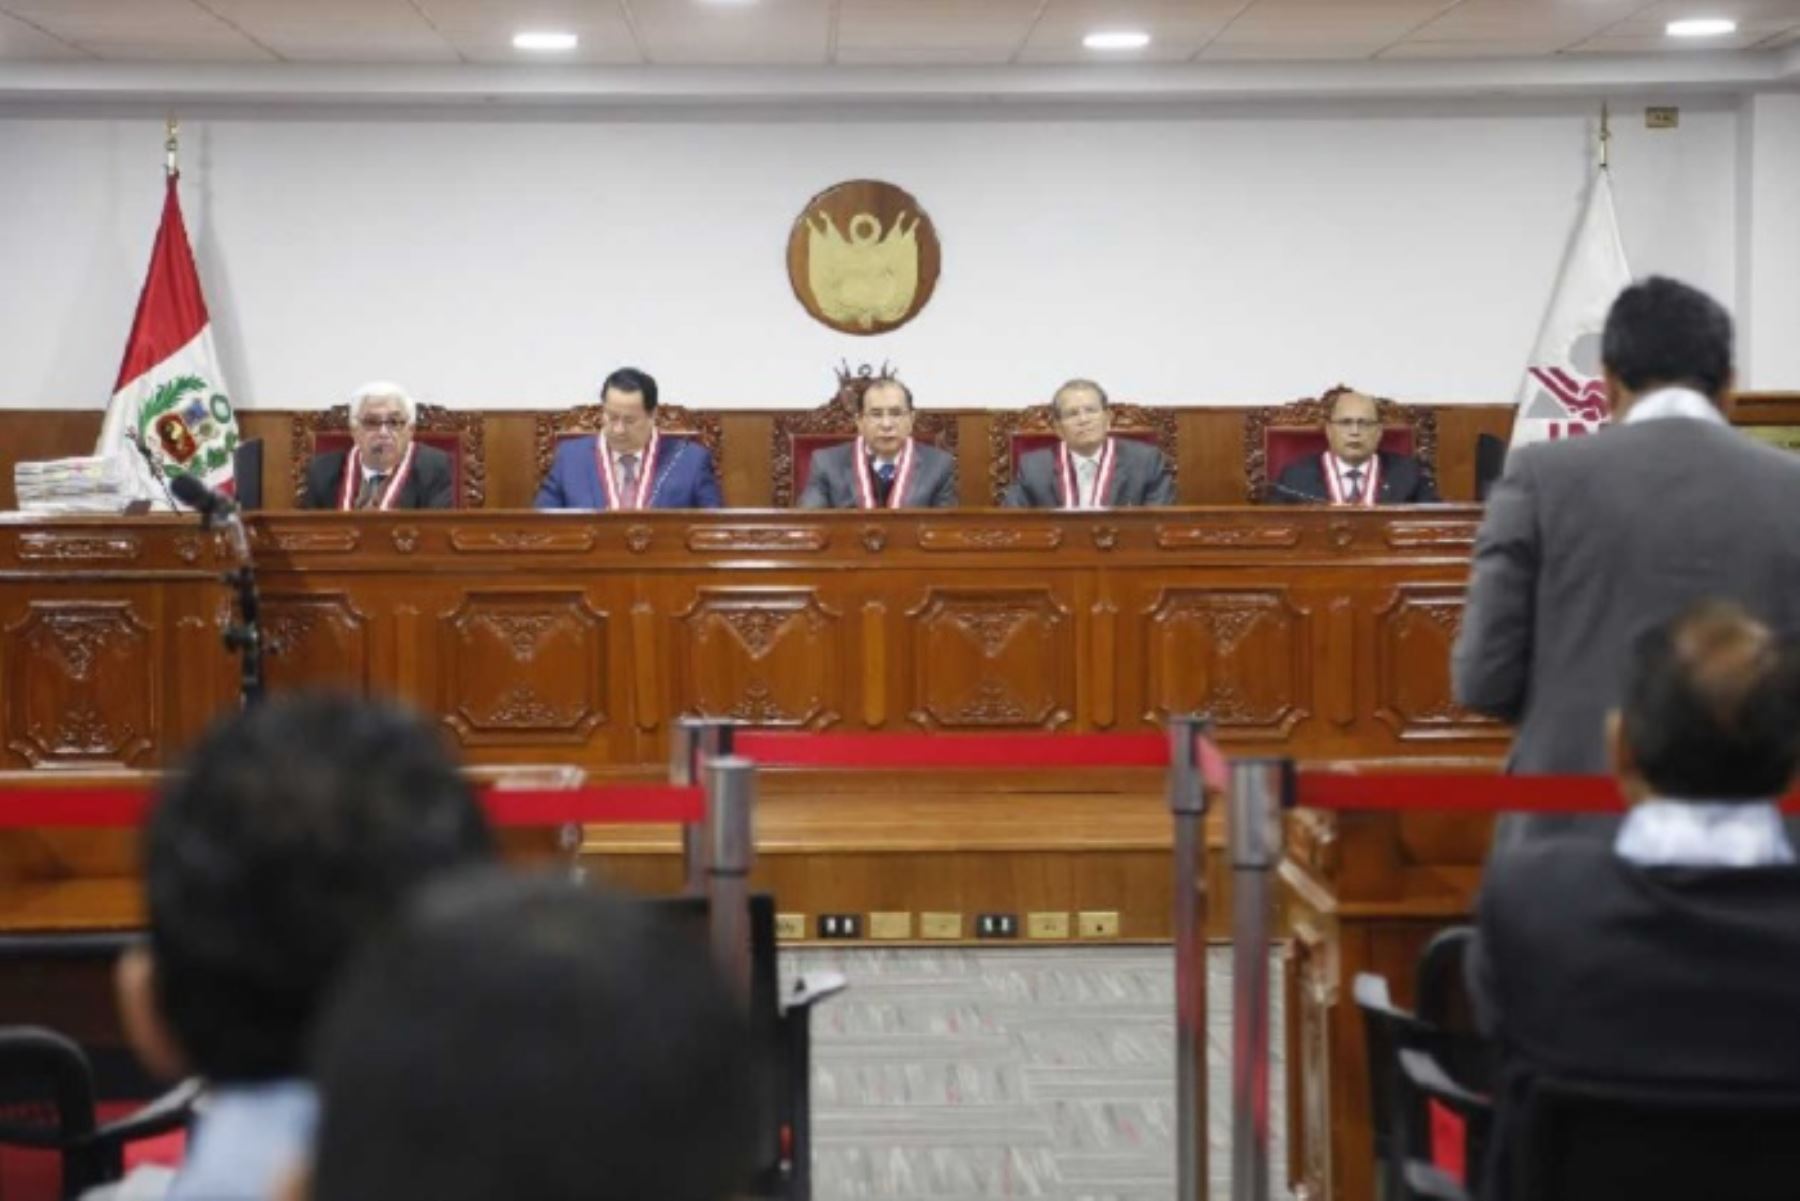 El Pleno del Jurado Nacional de Elecciones (JNE) resolvió entre enero y agosto la vacancia de 81 autoridades municipales y regionales del país, así como la suspensión en el ejercicio de sus funciones de otras 25 por diversas causales.